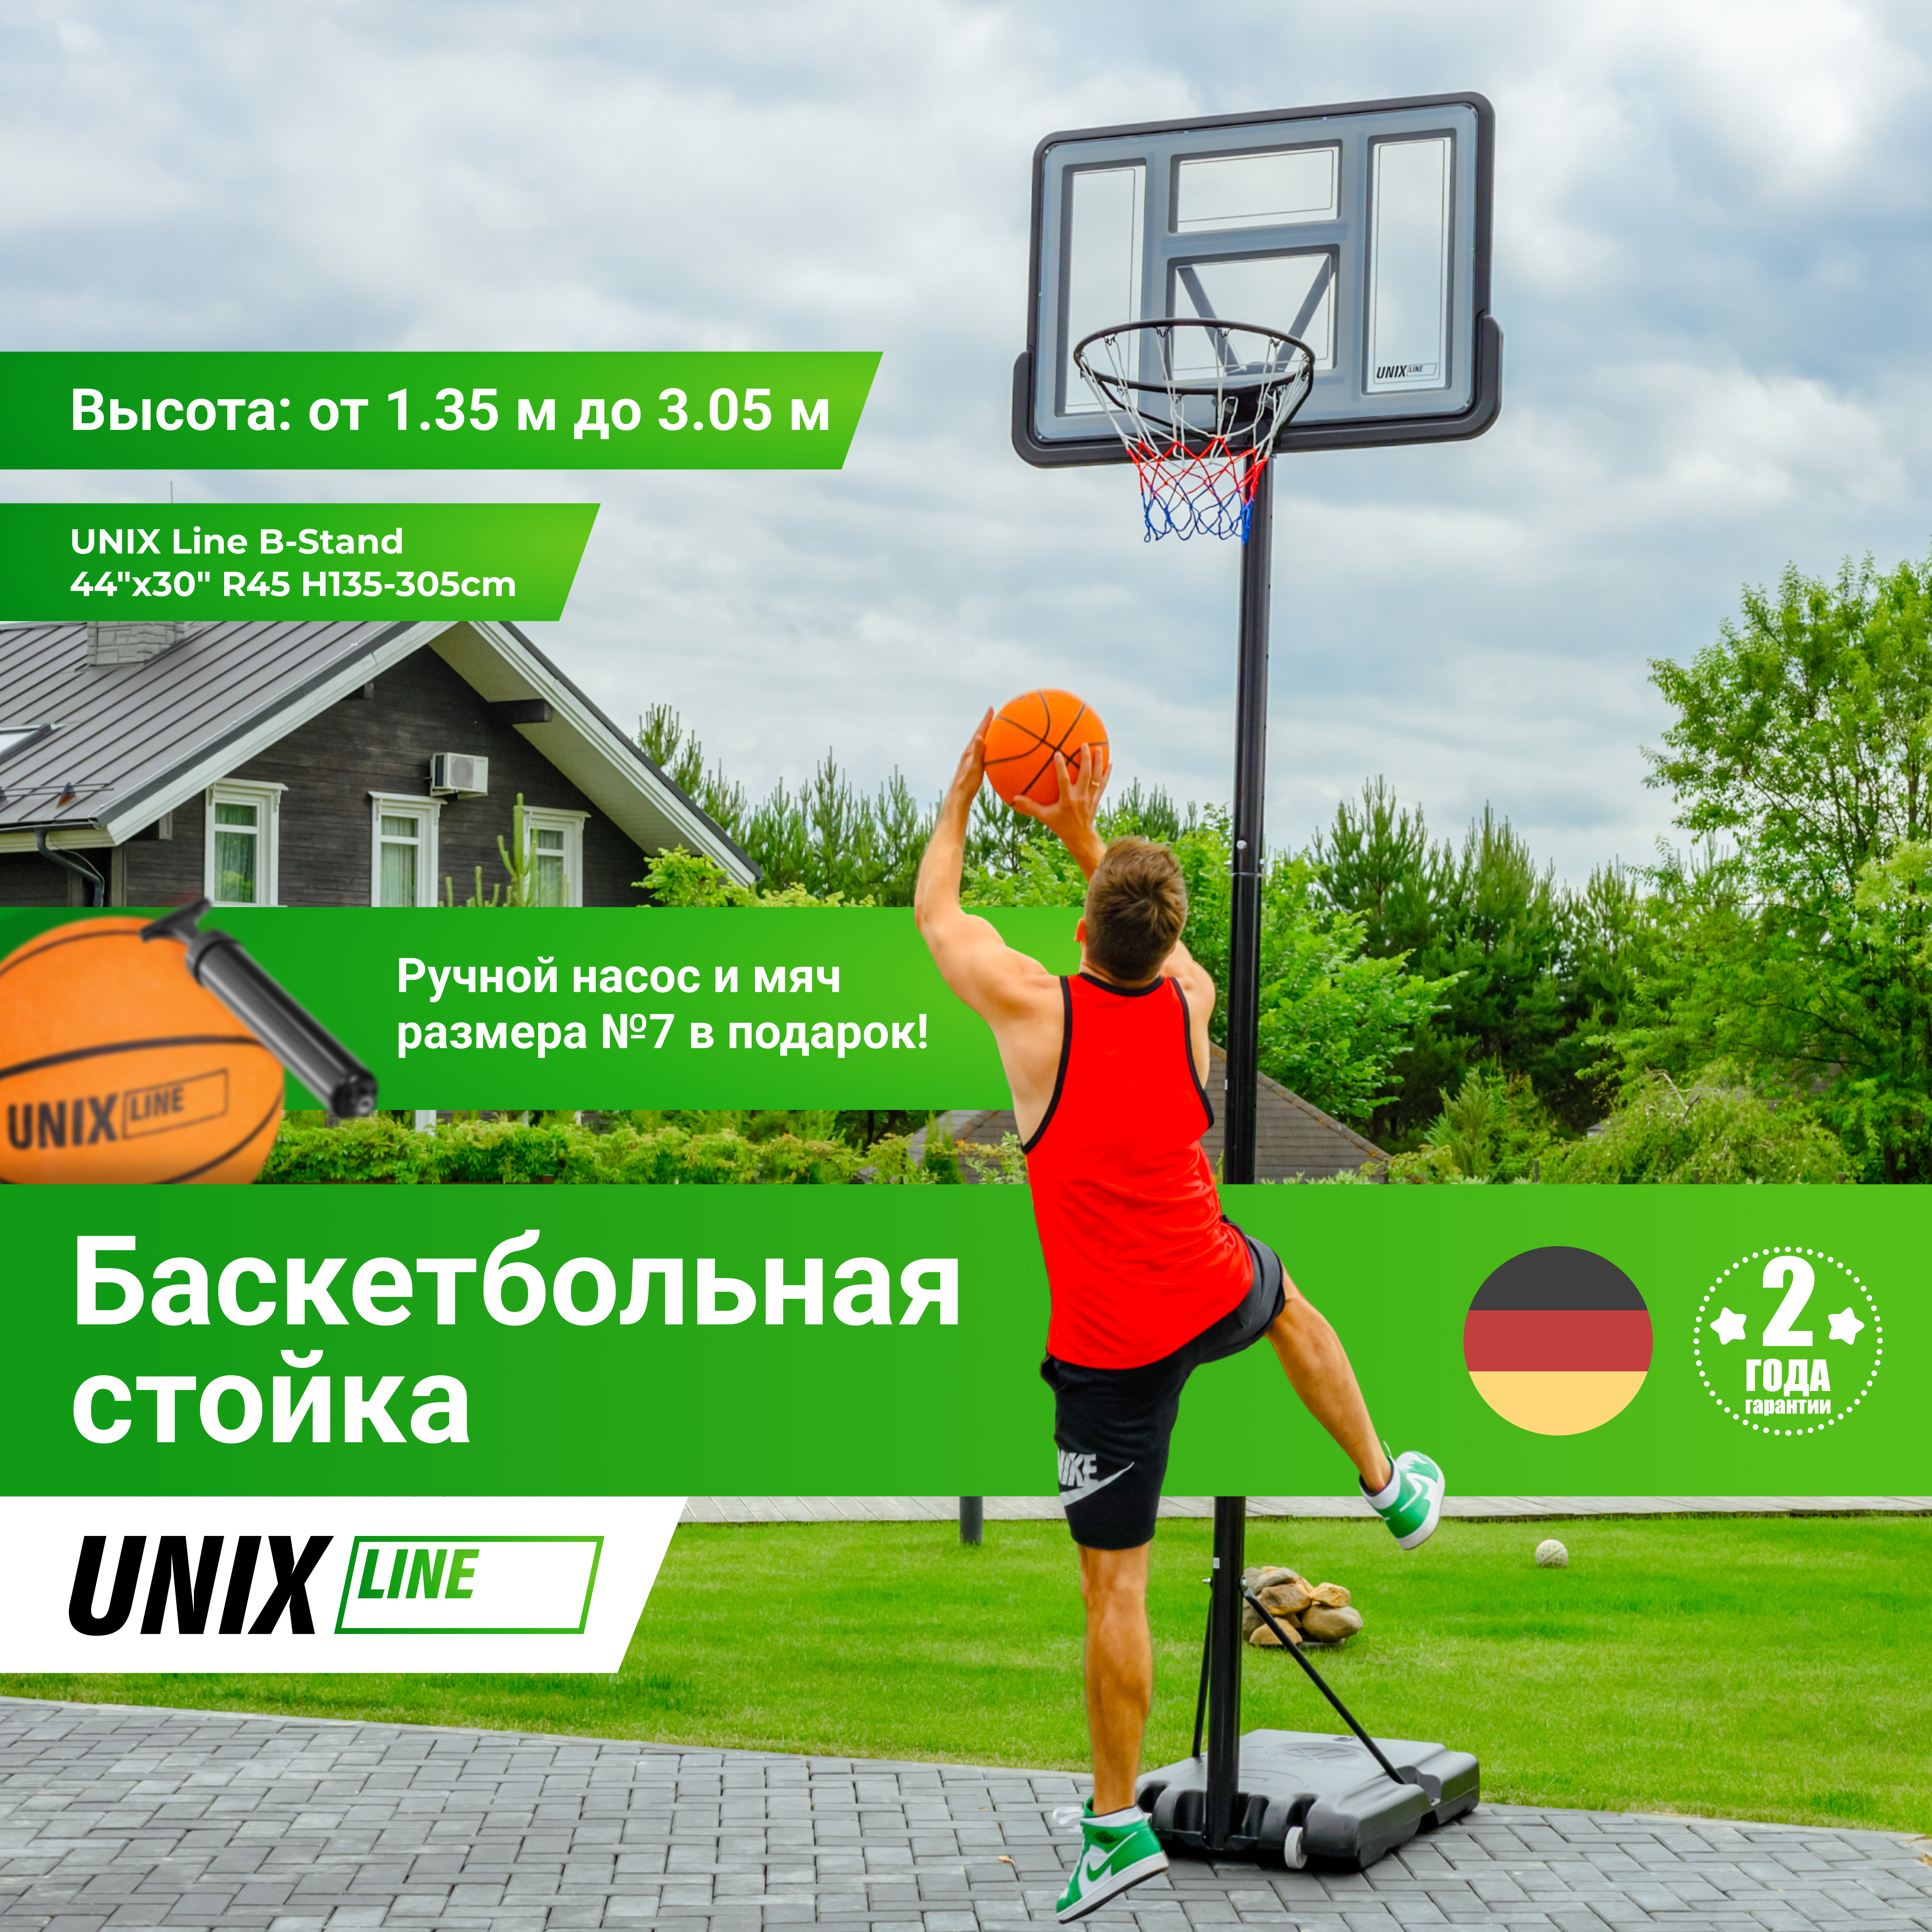 Баскетбольная стойка UNIX Line B-Stand 44"x30" R45 H135-305cm - 3 